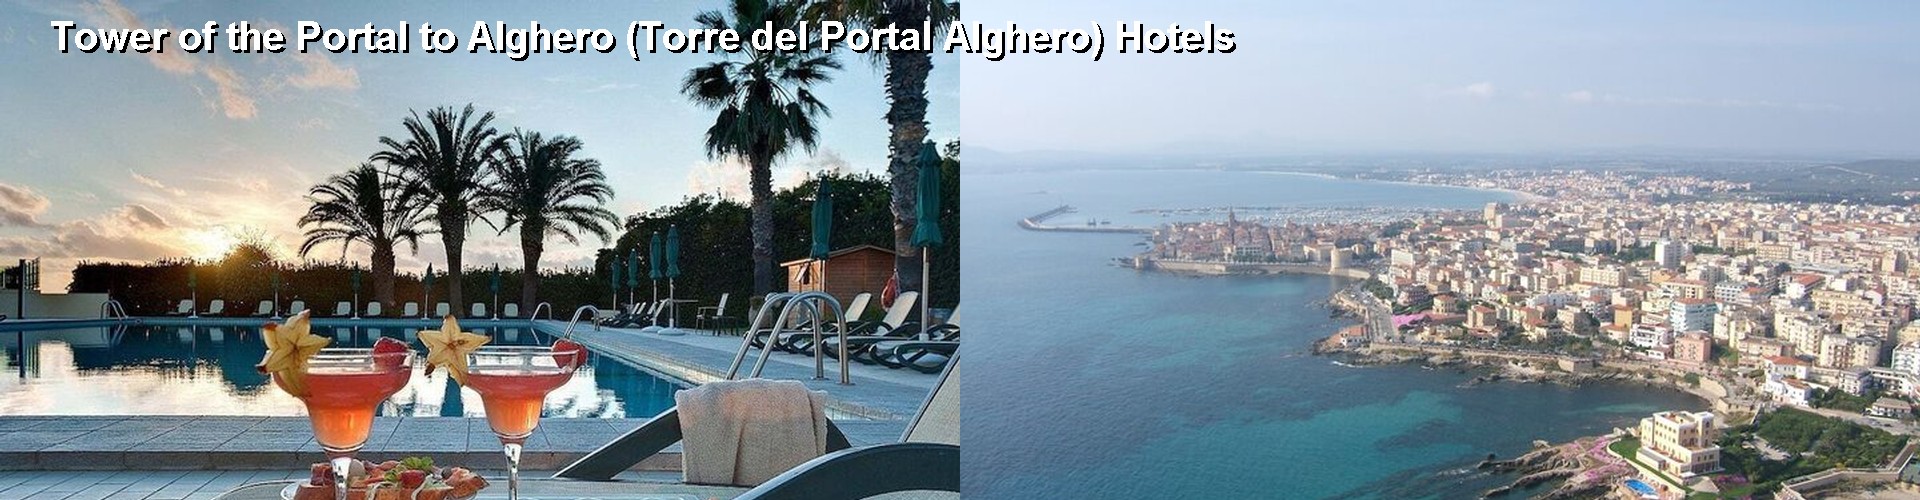 5 Best Hotels near Tower of the Portal to Alghero (Torre del Portal Alghero)